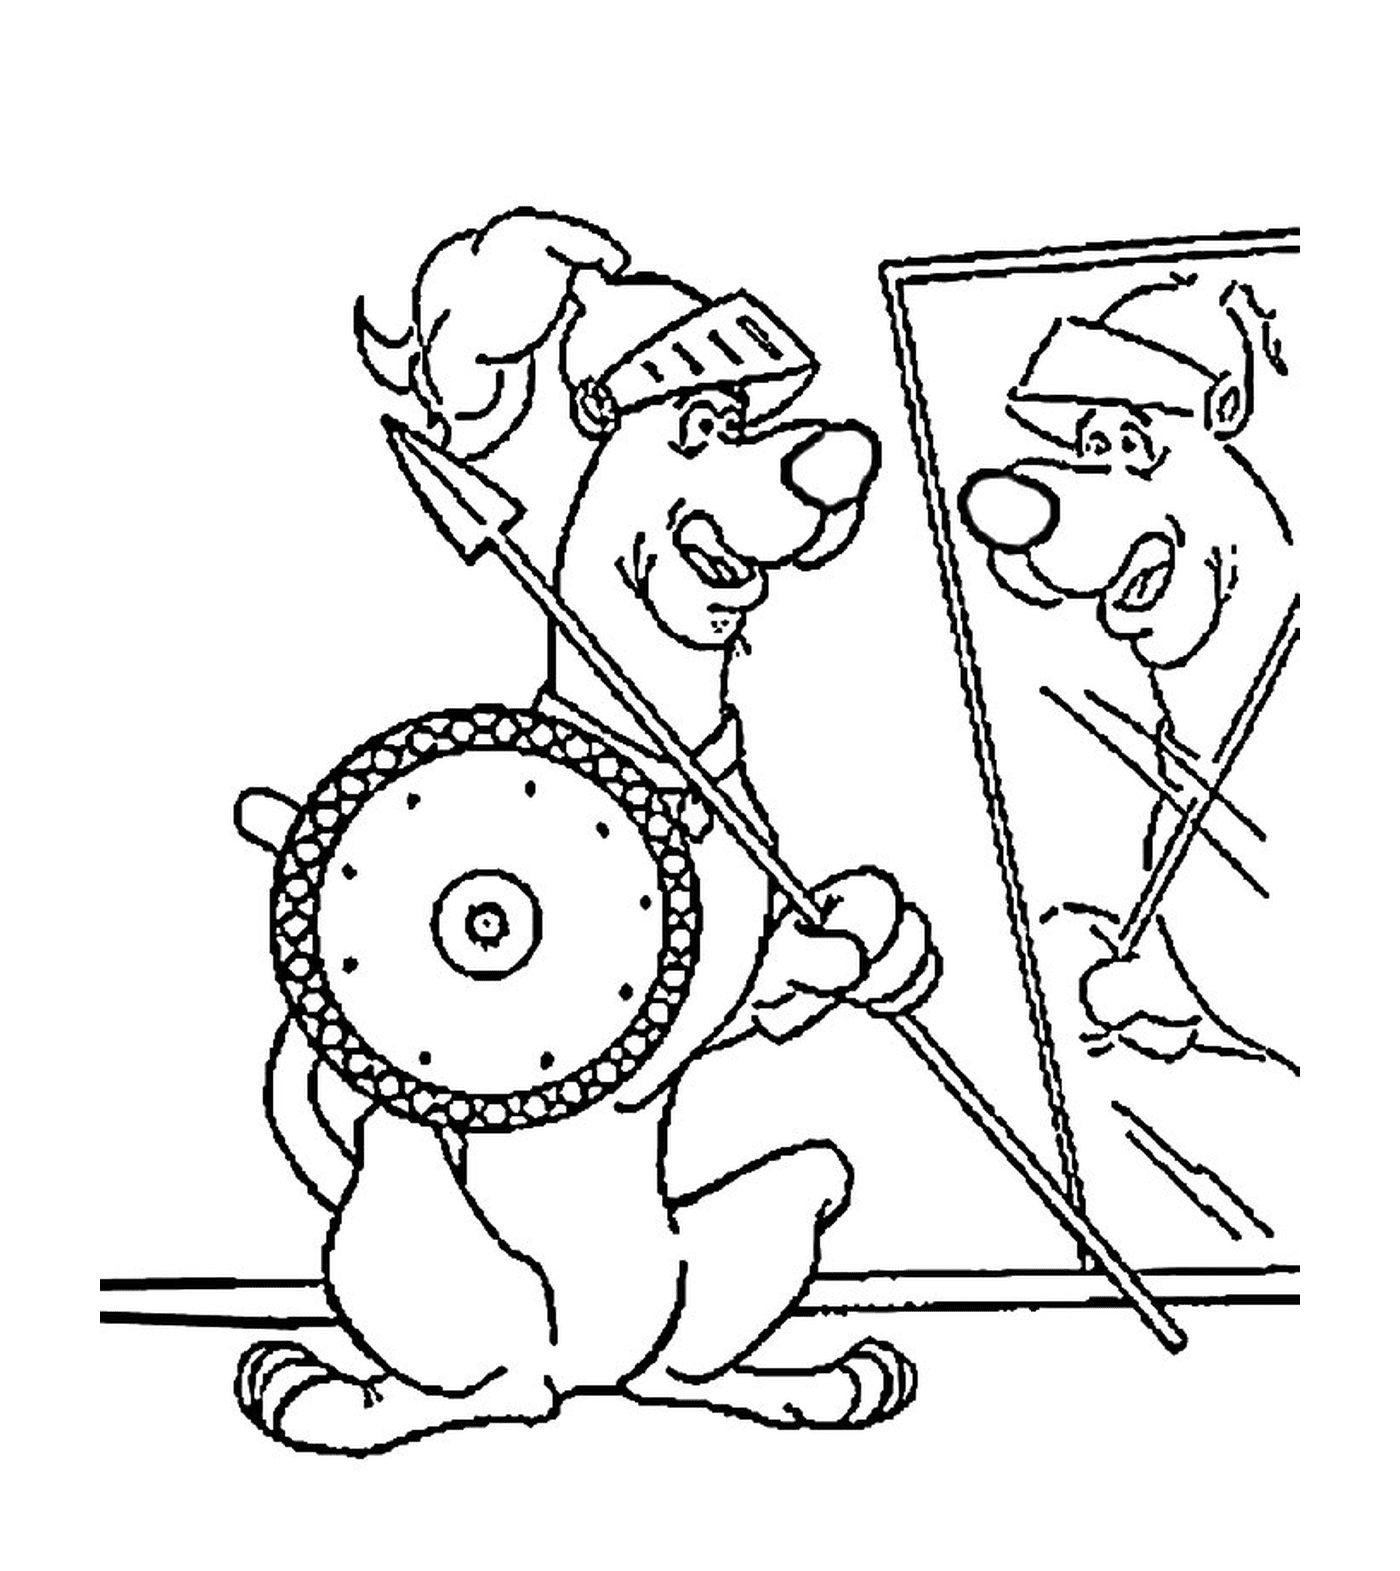  Un perro sostiene una lanza y un espejo 